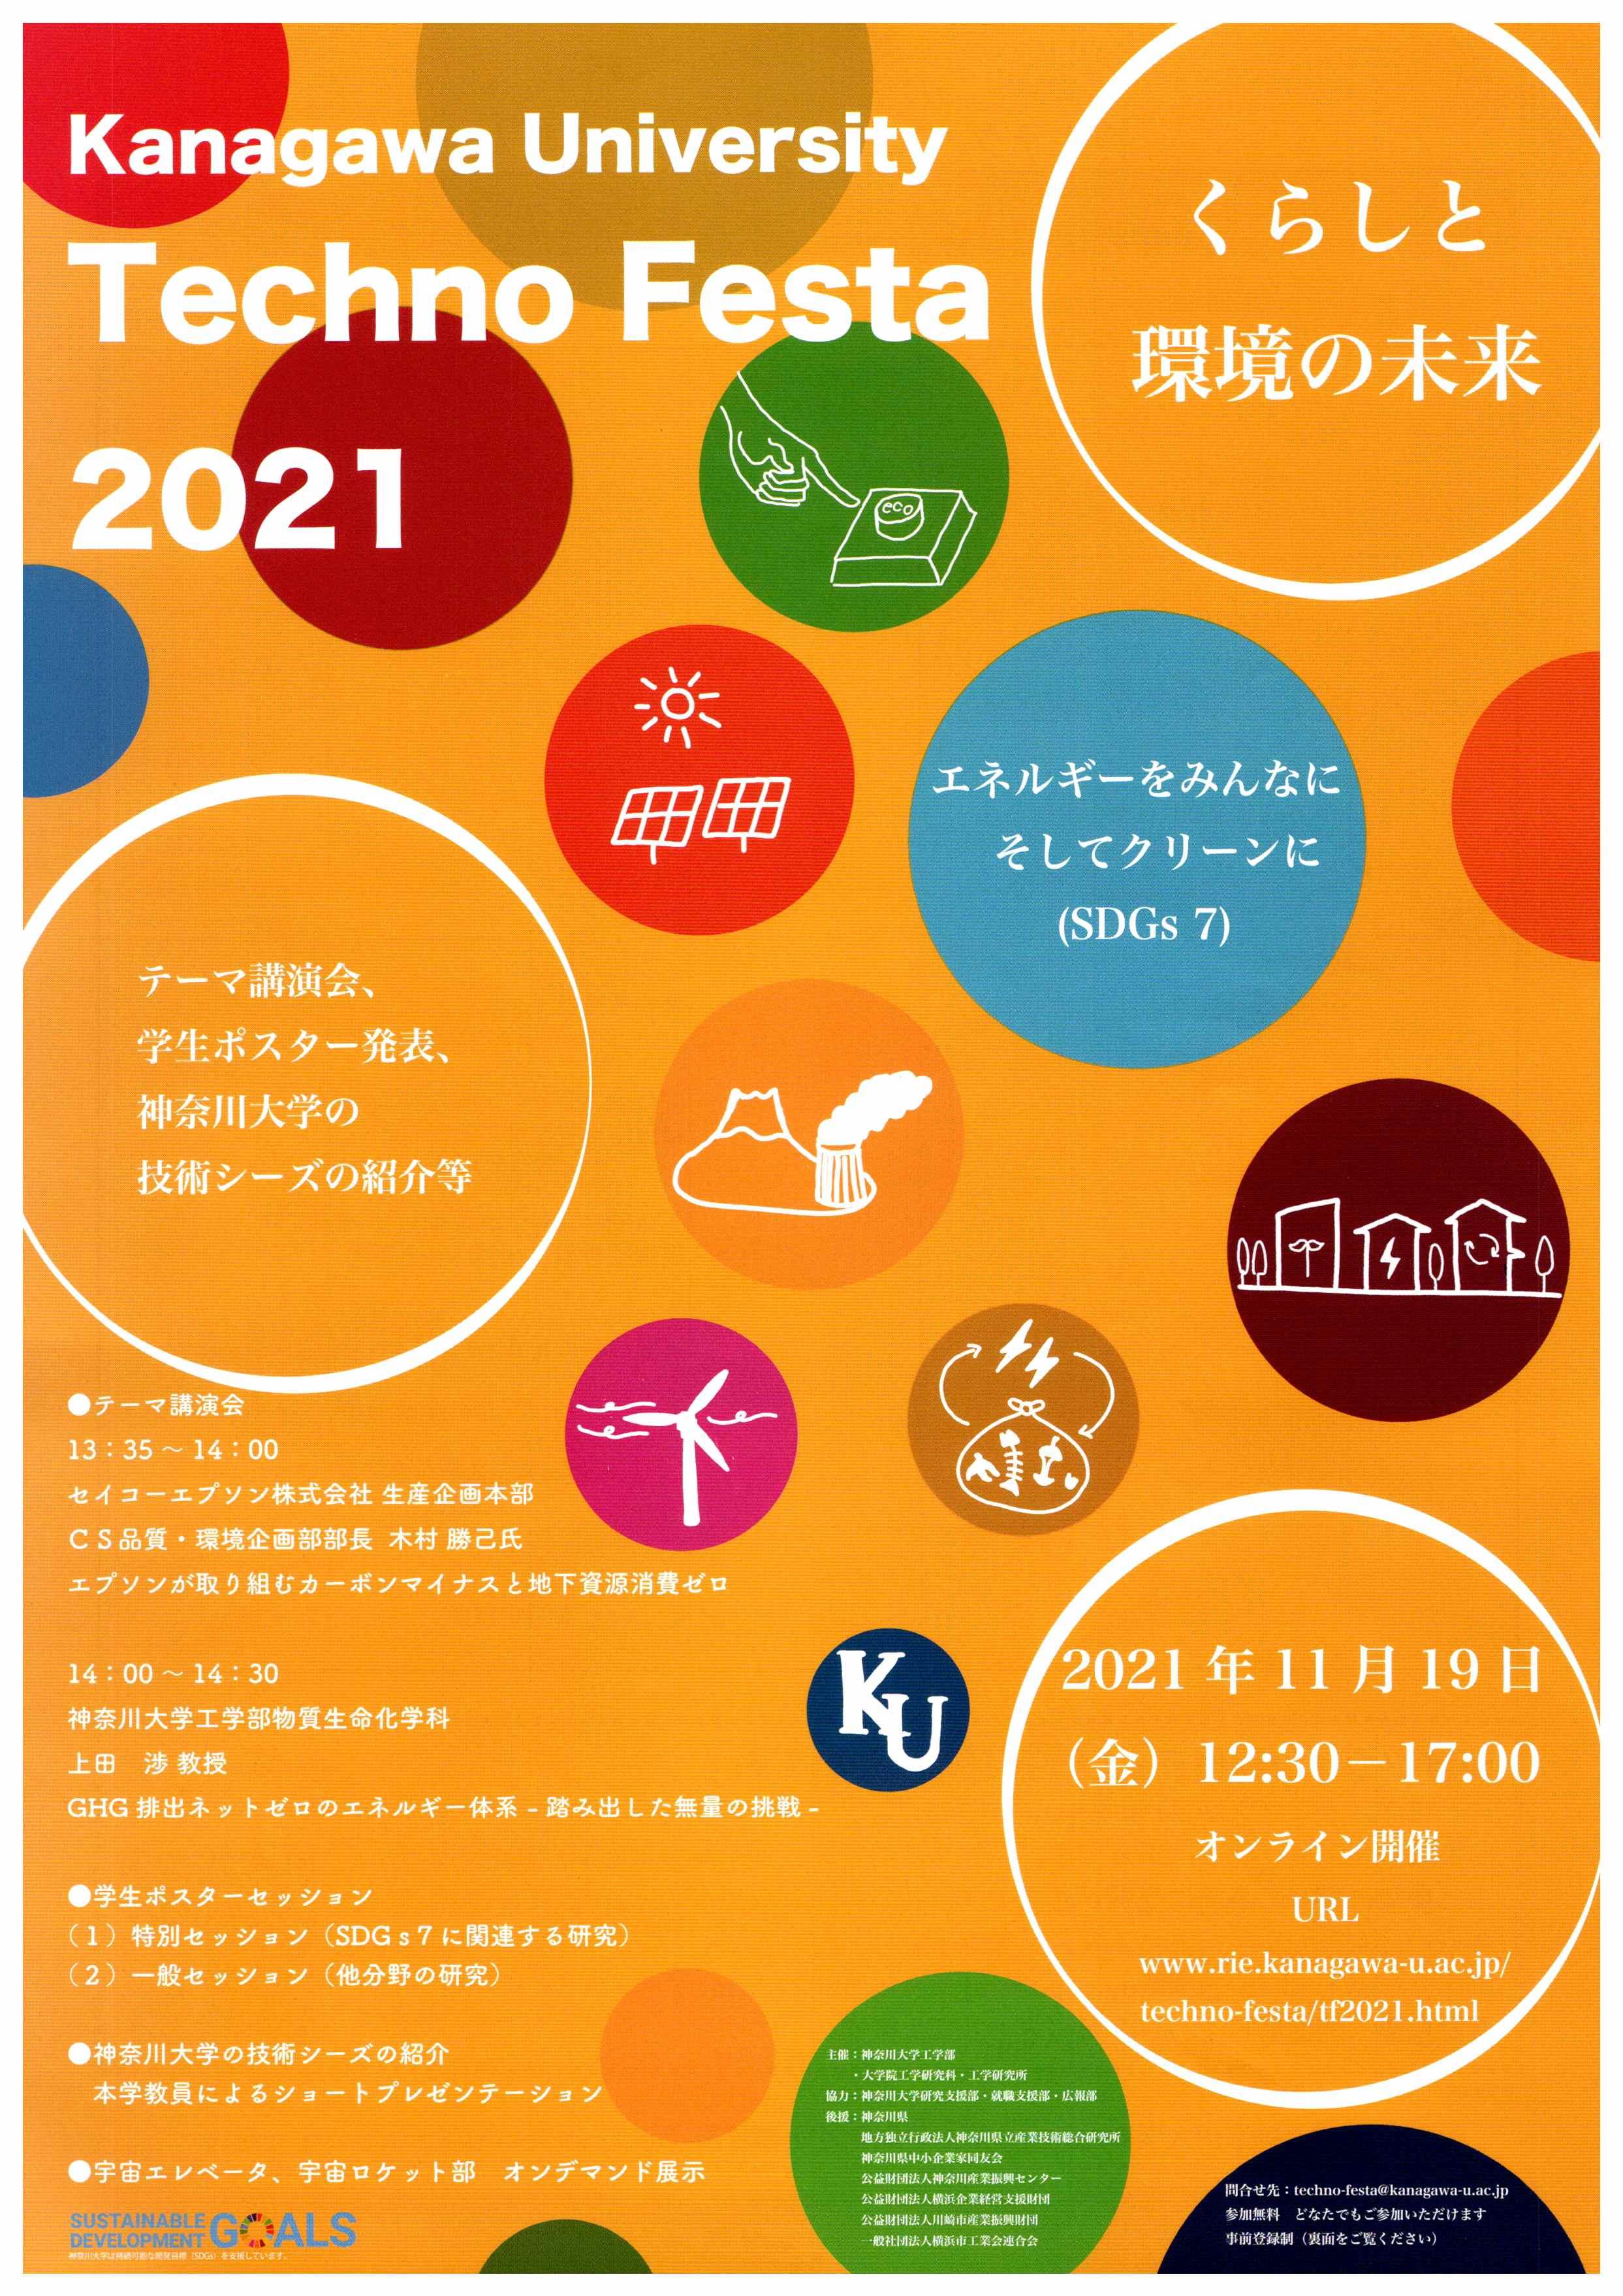 【神奈川大学】神大テクノフェスタ2021「エネルギーをみんなに そしてクリーンに（SDGs7）」を開催